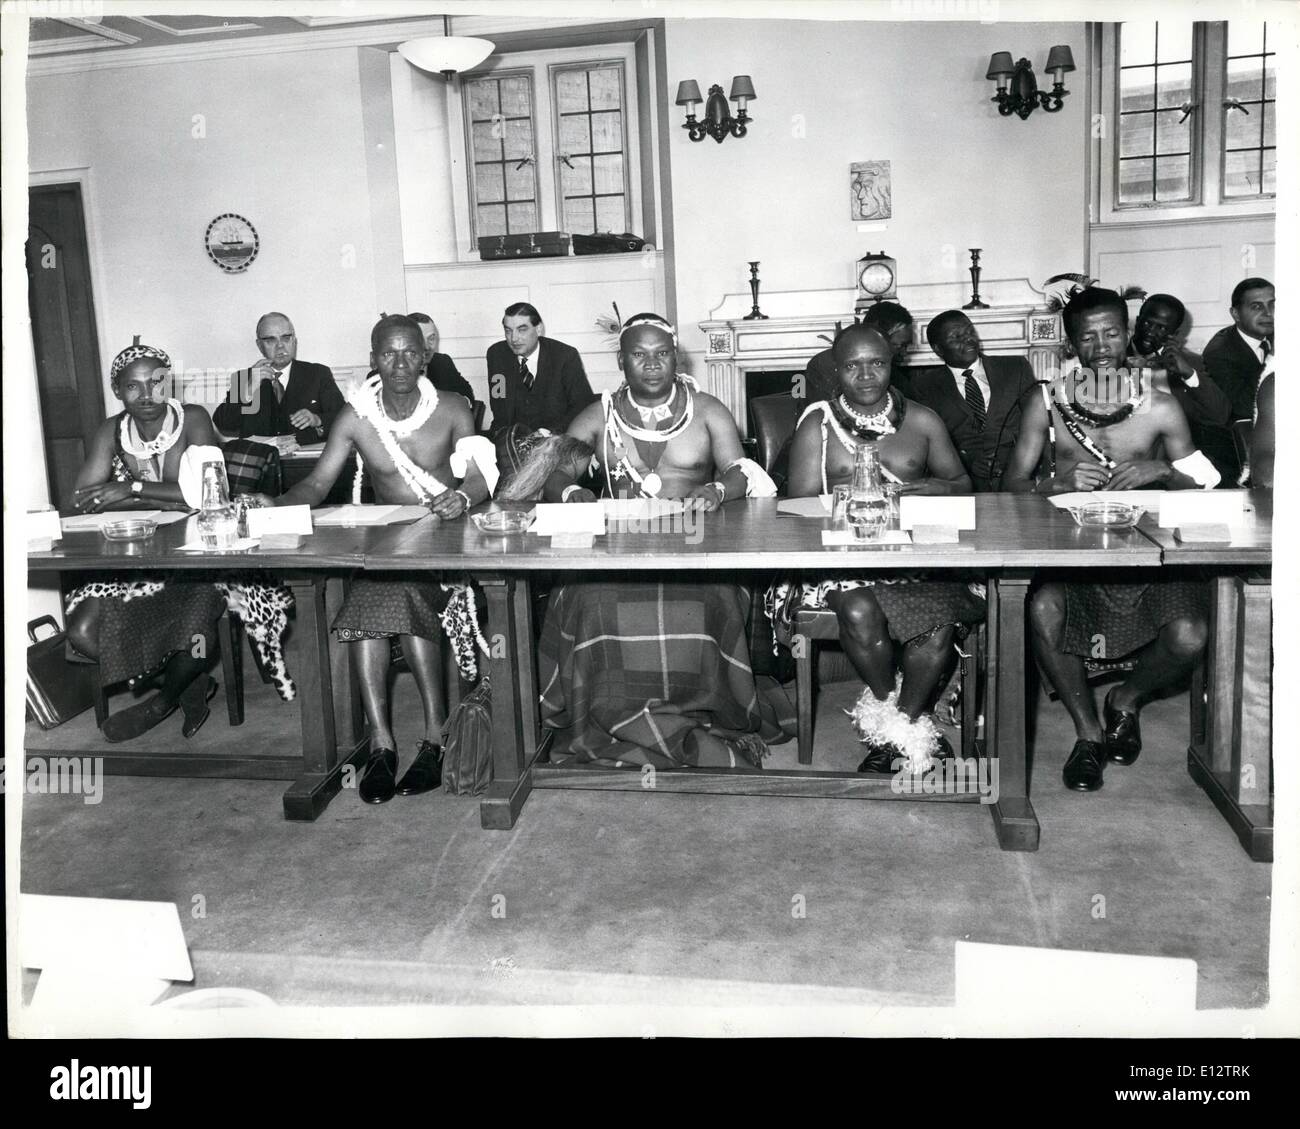 Febbraio 25, 2012 - Swaziland colloqui aperto a Londra: Discussioni ha iniziato al Colonial ufficio questa mattina tra i rappresentanti del territorio britannico dello Swaziland e funzionari dell'Ufficio coloniale guidata dal sig. Duncan Sandys. Swaziland si trova all'interno della Repubblica del Sud Africa e i colloqui dovranno decidere quale misura di riforma costituzionale è fattibile in questa fase. La foto mostra i membri della delegazione Swazi ai colloqui. Da sinistra a destra essi sono:- Sig. J.MB. Sukati, il sig. P. I. Dlamini e il sig. A.K. Hiofe. Foto Stock